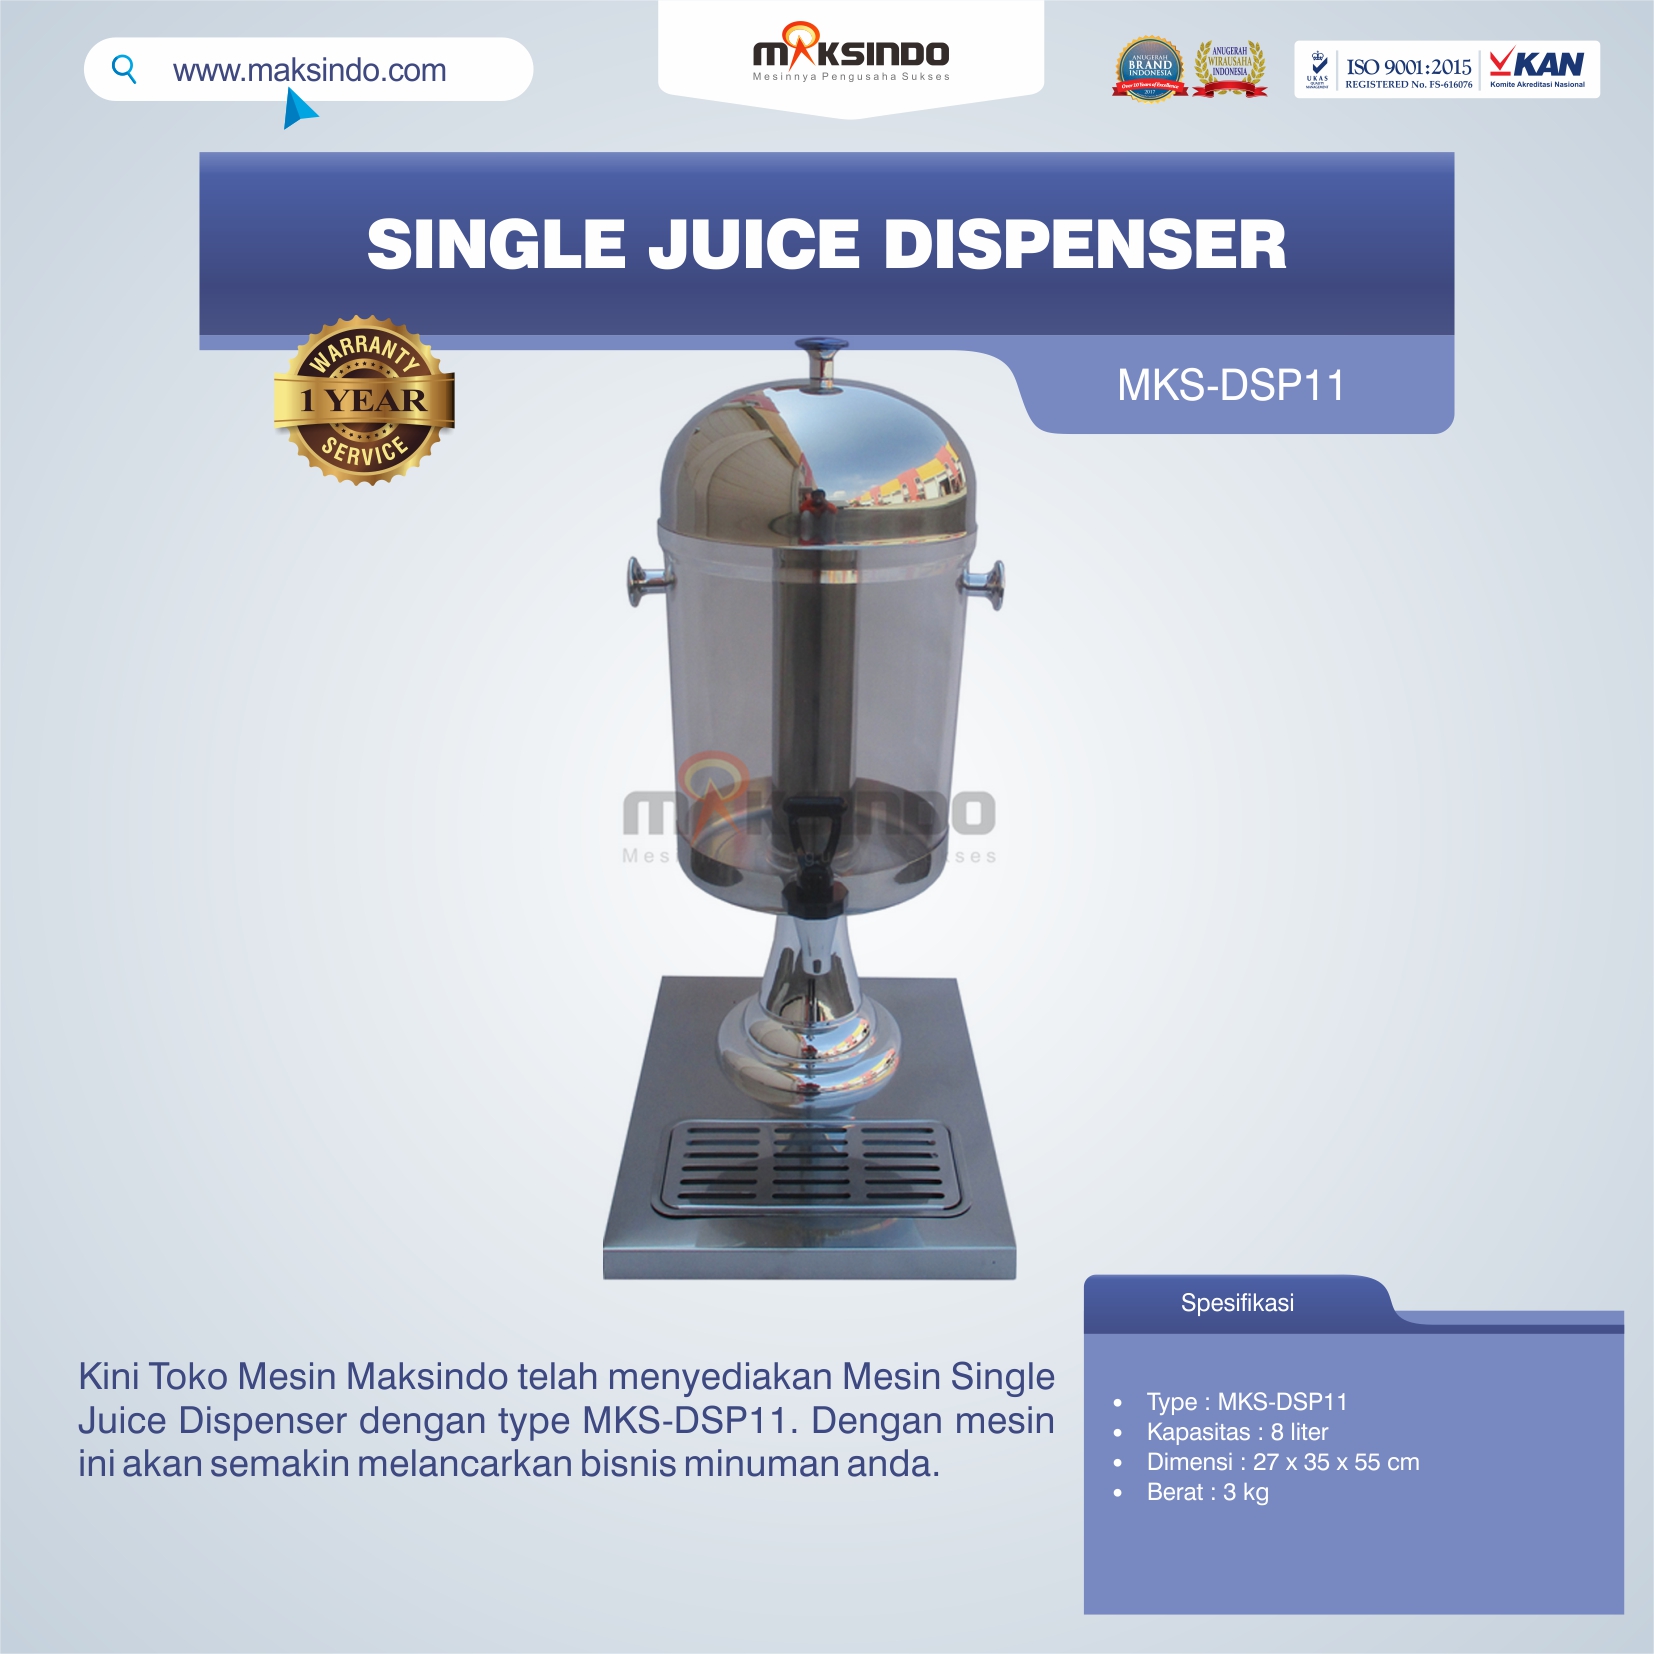 Jual Single Juice Dispenser MKS-DSP11 di Semarang